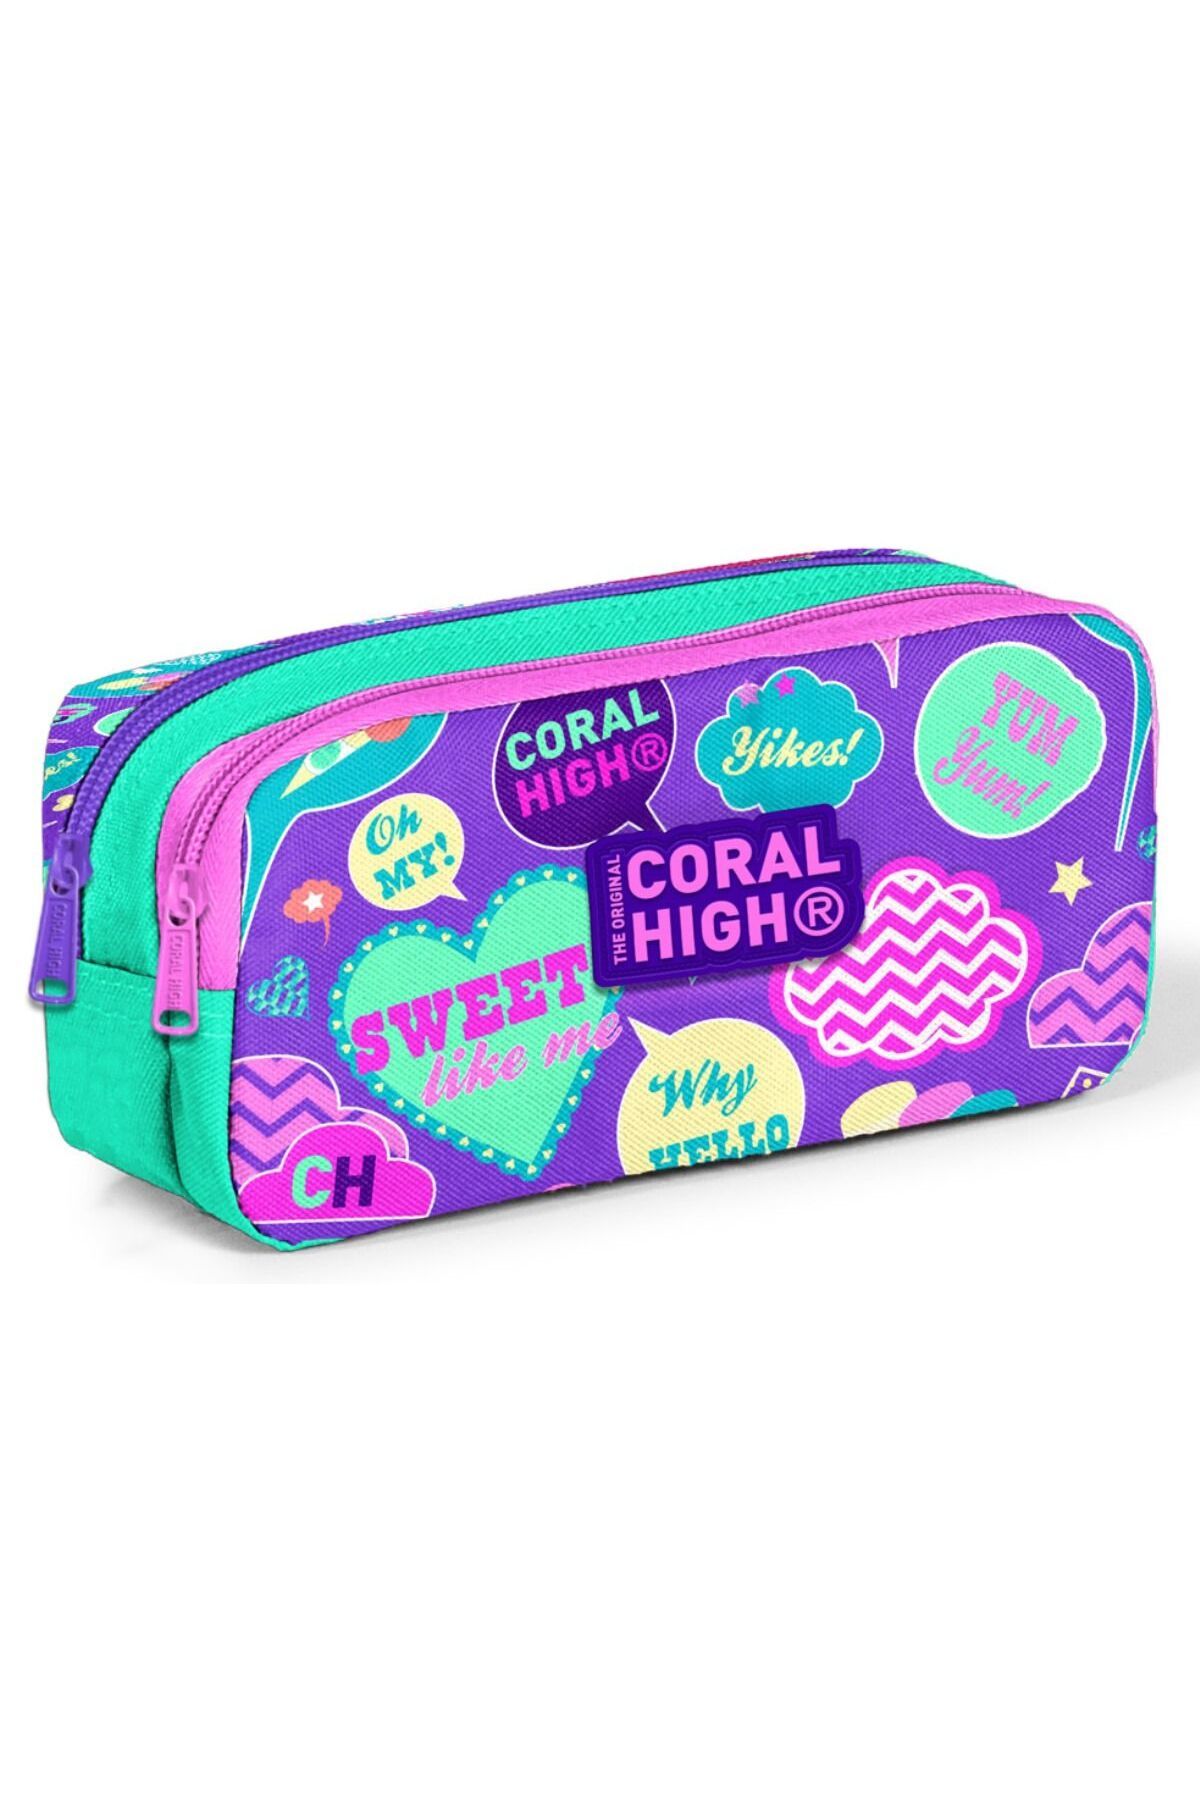 Coral High Iki Bölmeli Kız Çocuk Yeşil Lavanta Yazılar Kalem Çantası Kalemlik